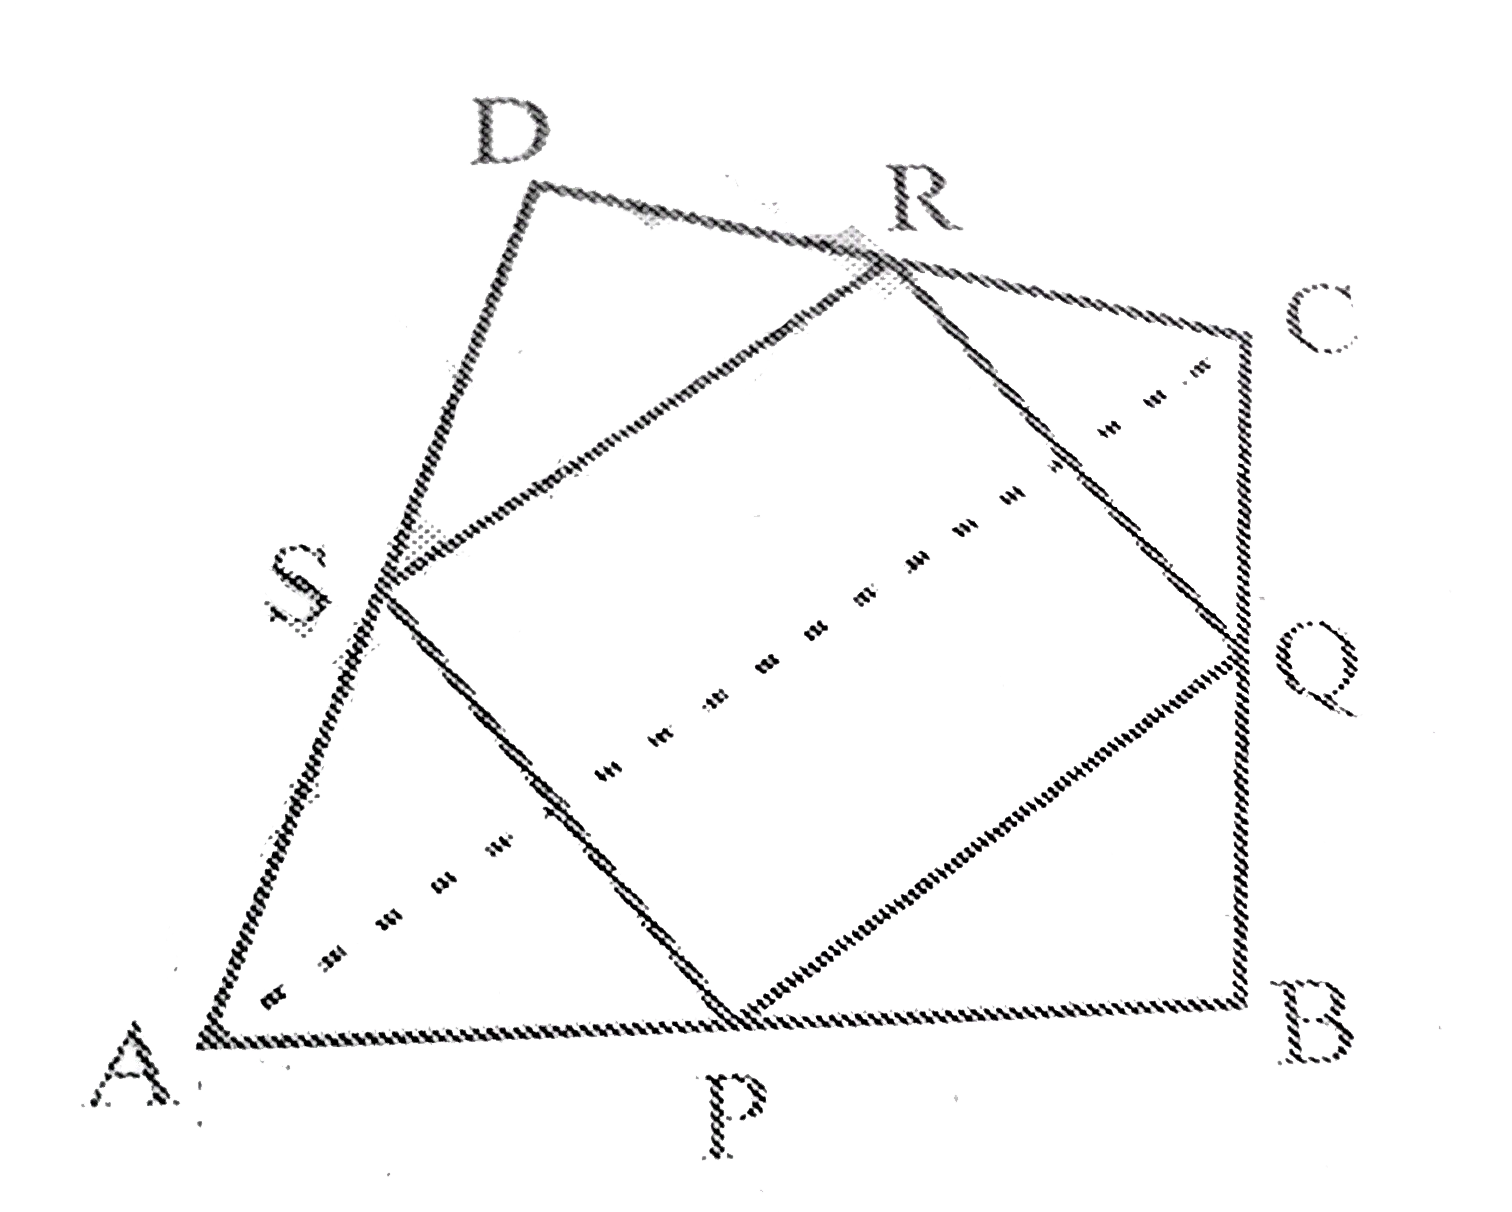 ABCD एक  चतुर्भुज  है जिसमें P ,Q ,R  और  S   क्रमश  :  भुजाओं AB ,BC , CD  और  DA  में  मध्य - बिंदु  है  ( देखिए आक्रति  8.29 )| AC उसका  एक  विकर्ण  है ।  दर्शाइए  कि     (i) SR||AC   और   SR=(1)/(2) AC  है    (ii)  PQ =SR  है |   (iii)  PQRS एक समांतर  चतुर्भुज  है ।